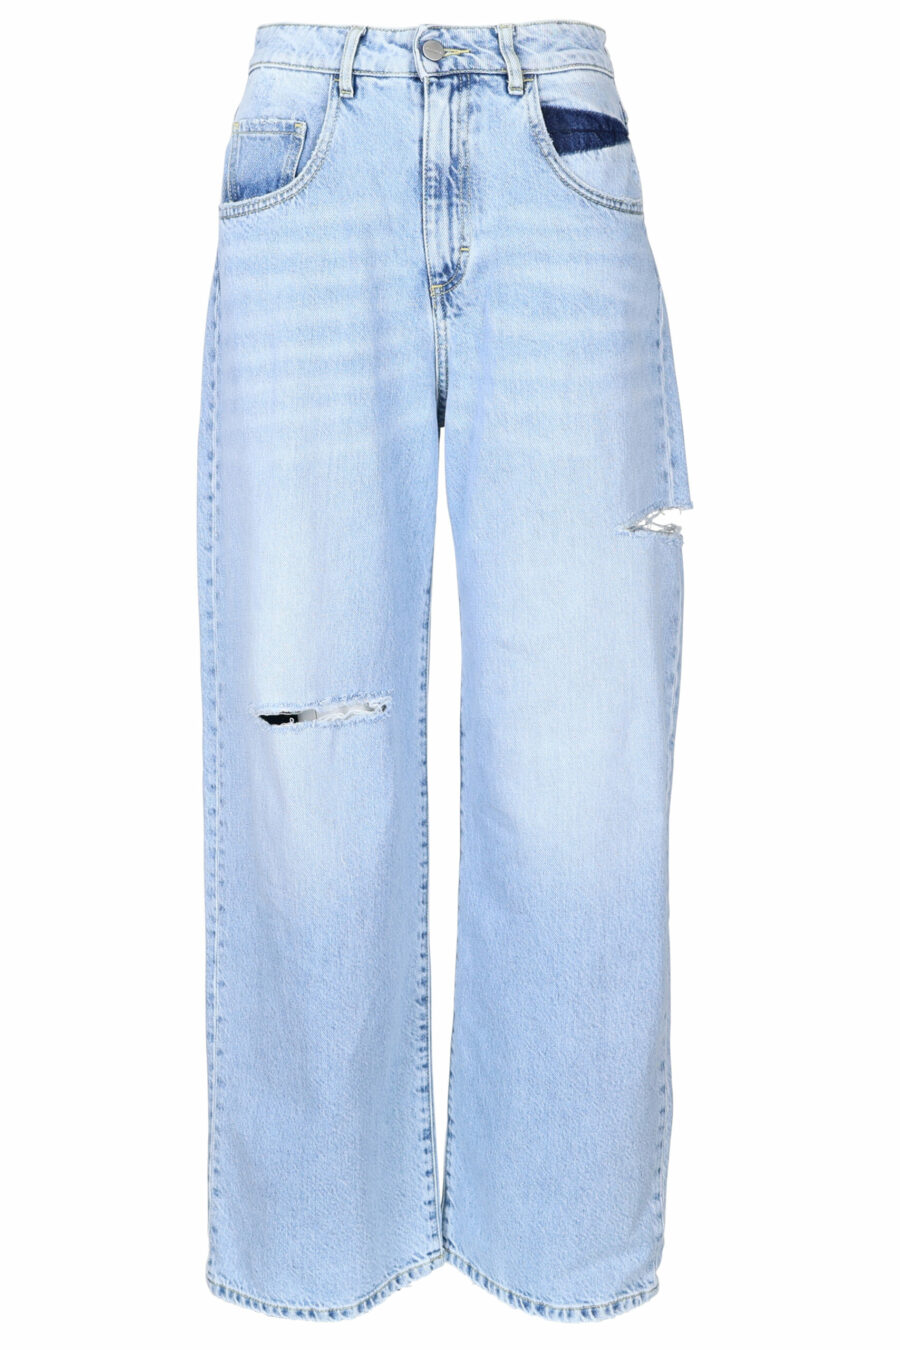 Pantalón vaquero azul "poppy" con rotos - 8052691167298 scaled